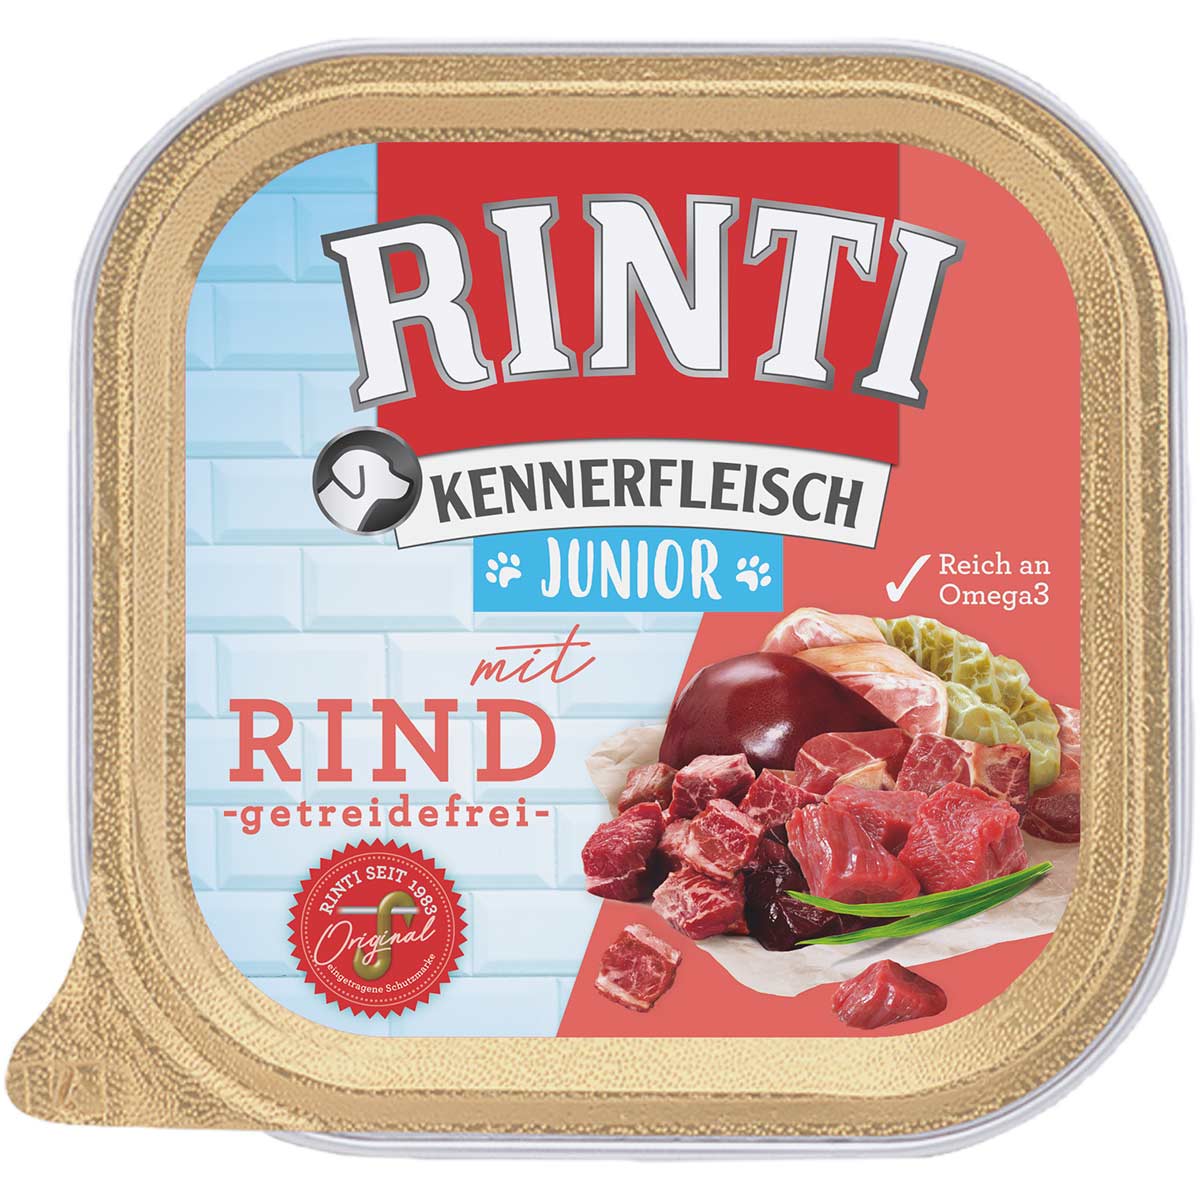 Rinti Kennerfleisch Junior mit Rind 18x300g von Rinti